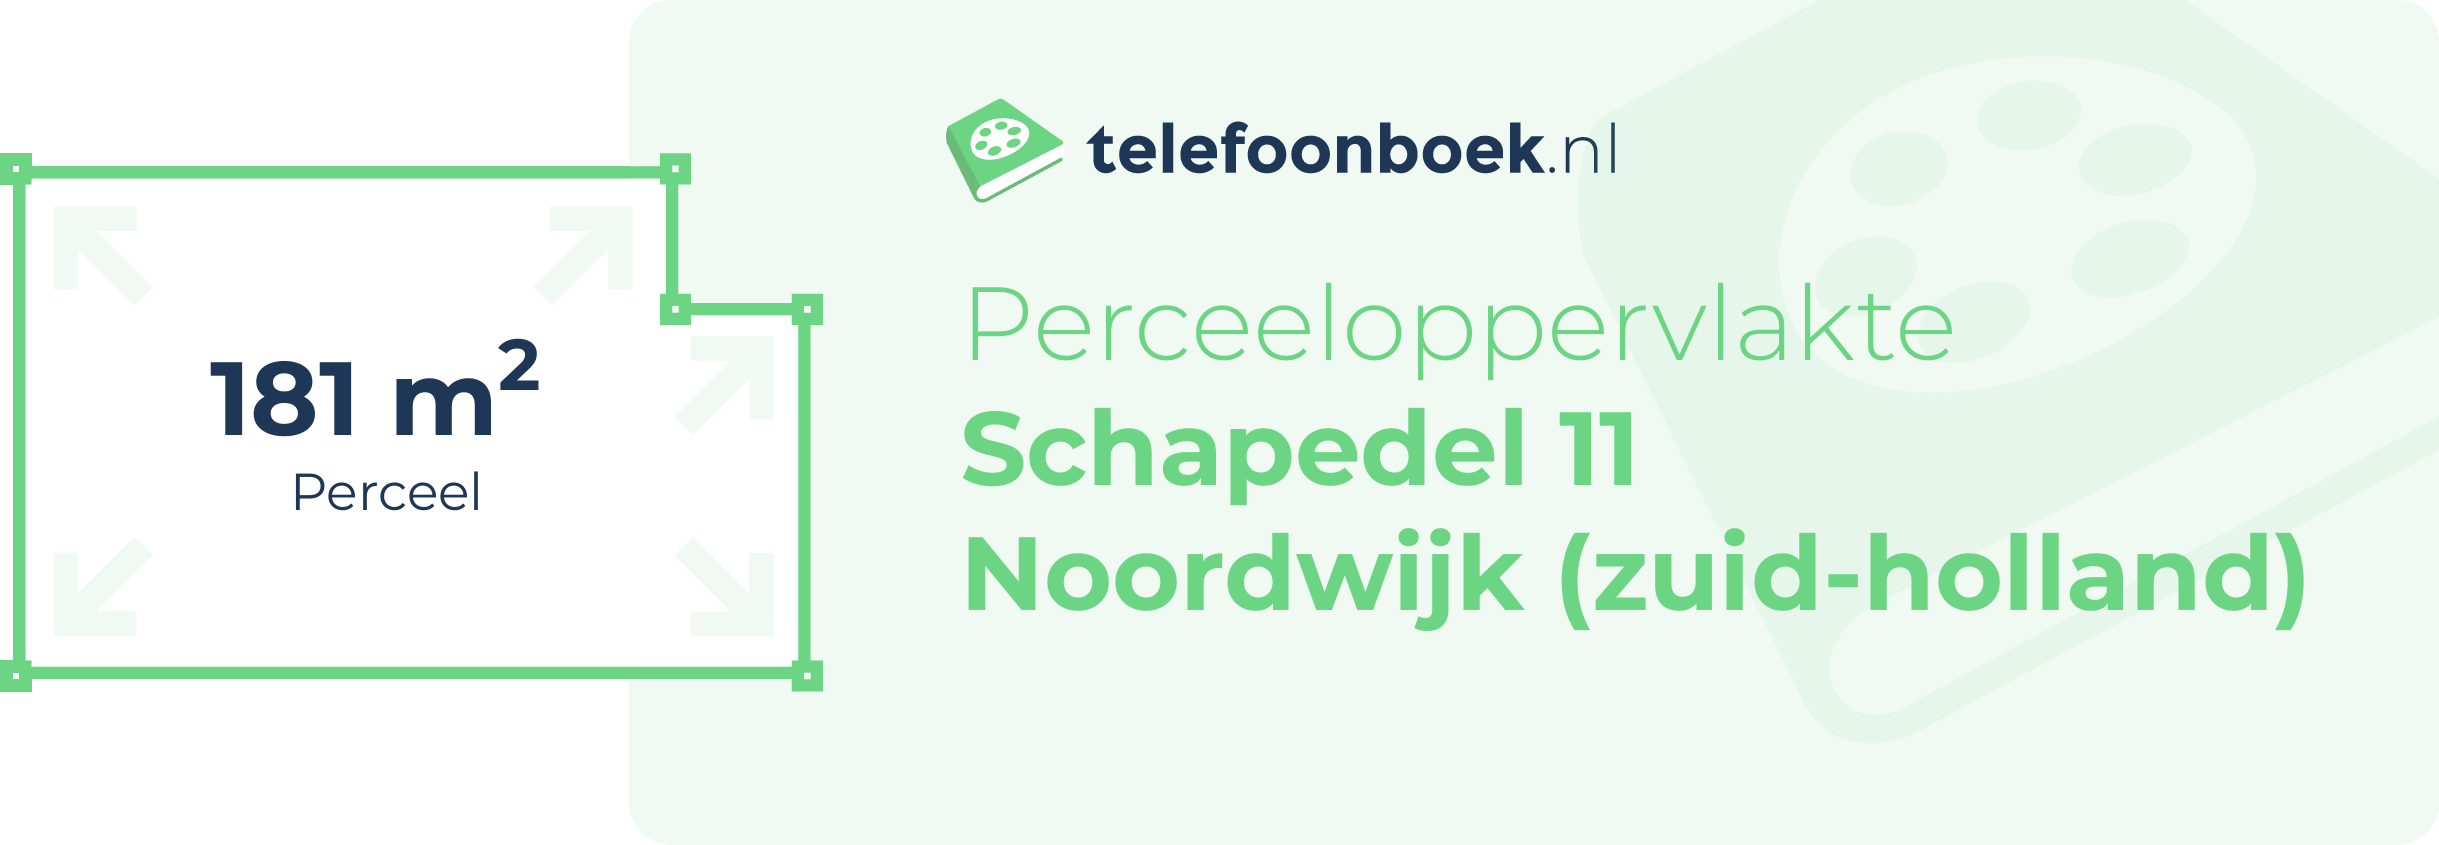 Perceeloppervlakte Schapedel 11 Noordwijk (Zuid-Holland)